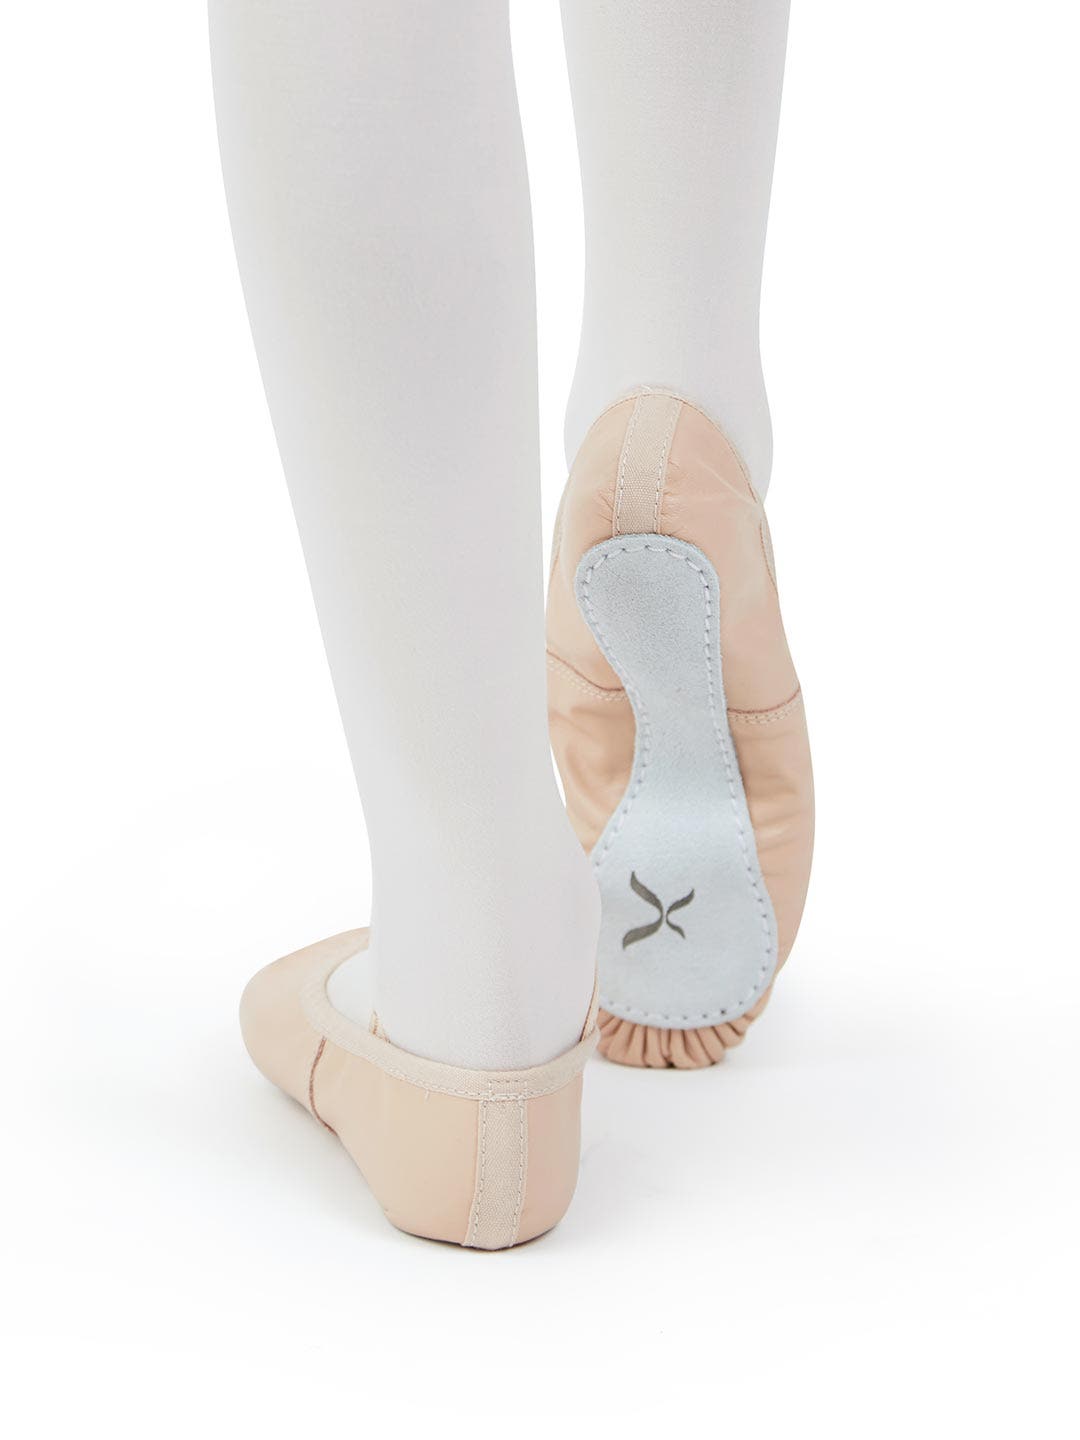 Daisy Leather Ballet Slipper in Ballet Pink in Child Sizes –  StudioWholesaleProgram™